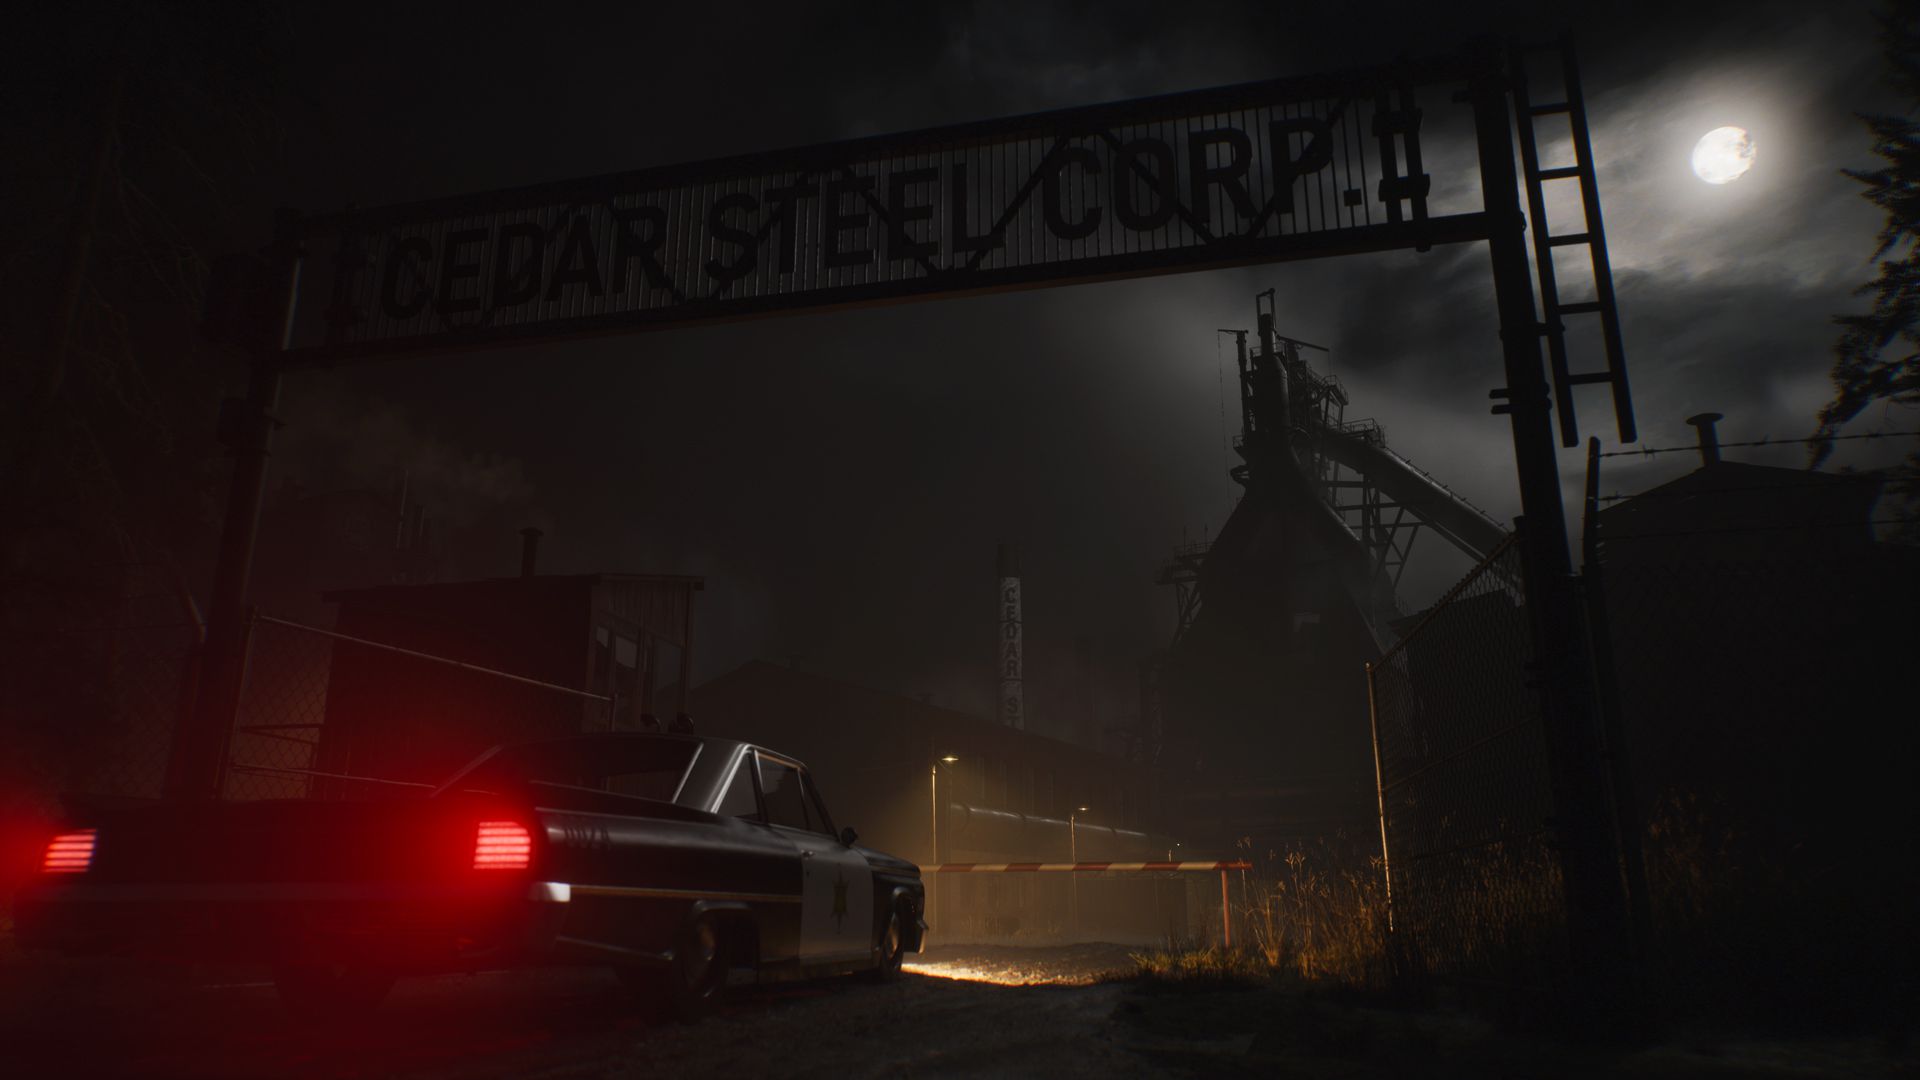 대리석 강철 공사를 위한 자동차가 Cedar Steel Corp.의 게임 토픽에 있는 이미지